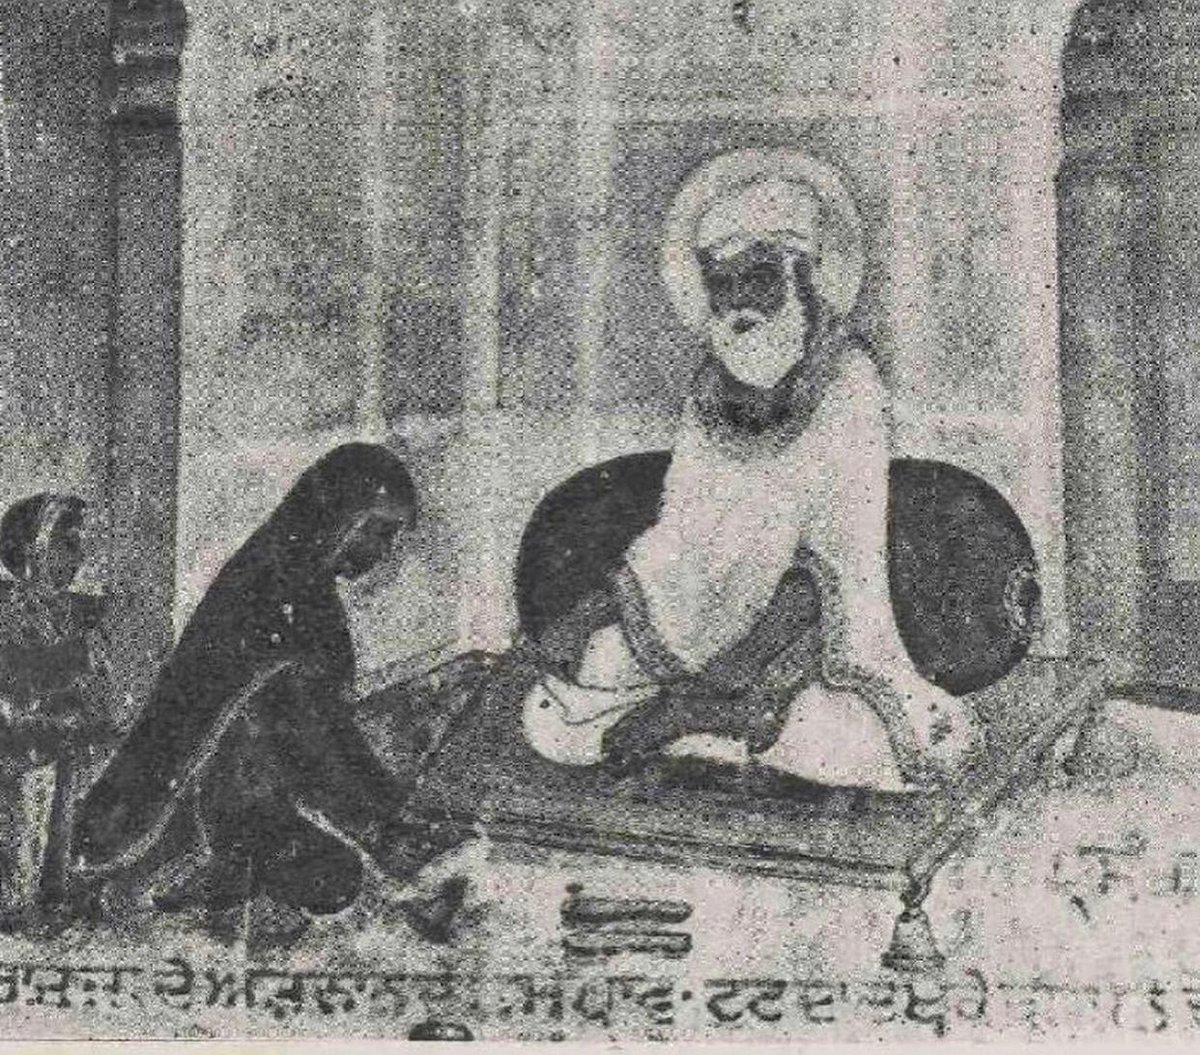 ਸਤਿਗੁਰ ਭਏ ਦਇਆਲ ਅਭੇਦ ਭਗਤ ਬੀਬੀ ਕਰੀ ॥The True Guru [Amar Das] bestowed his Grace upon the Devoted Bibi [Bhani], merging her [with the Divine]. - Mehima Prakash (1776) page 266